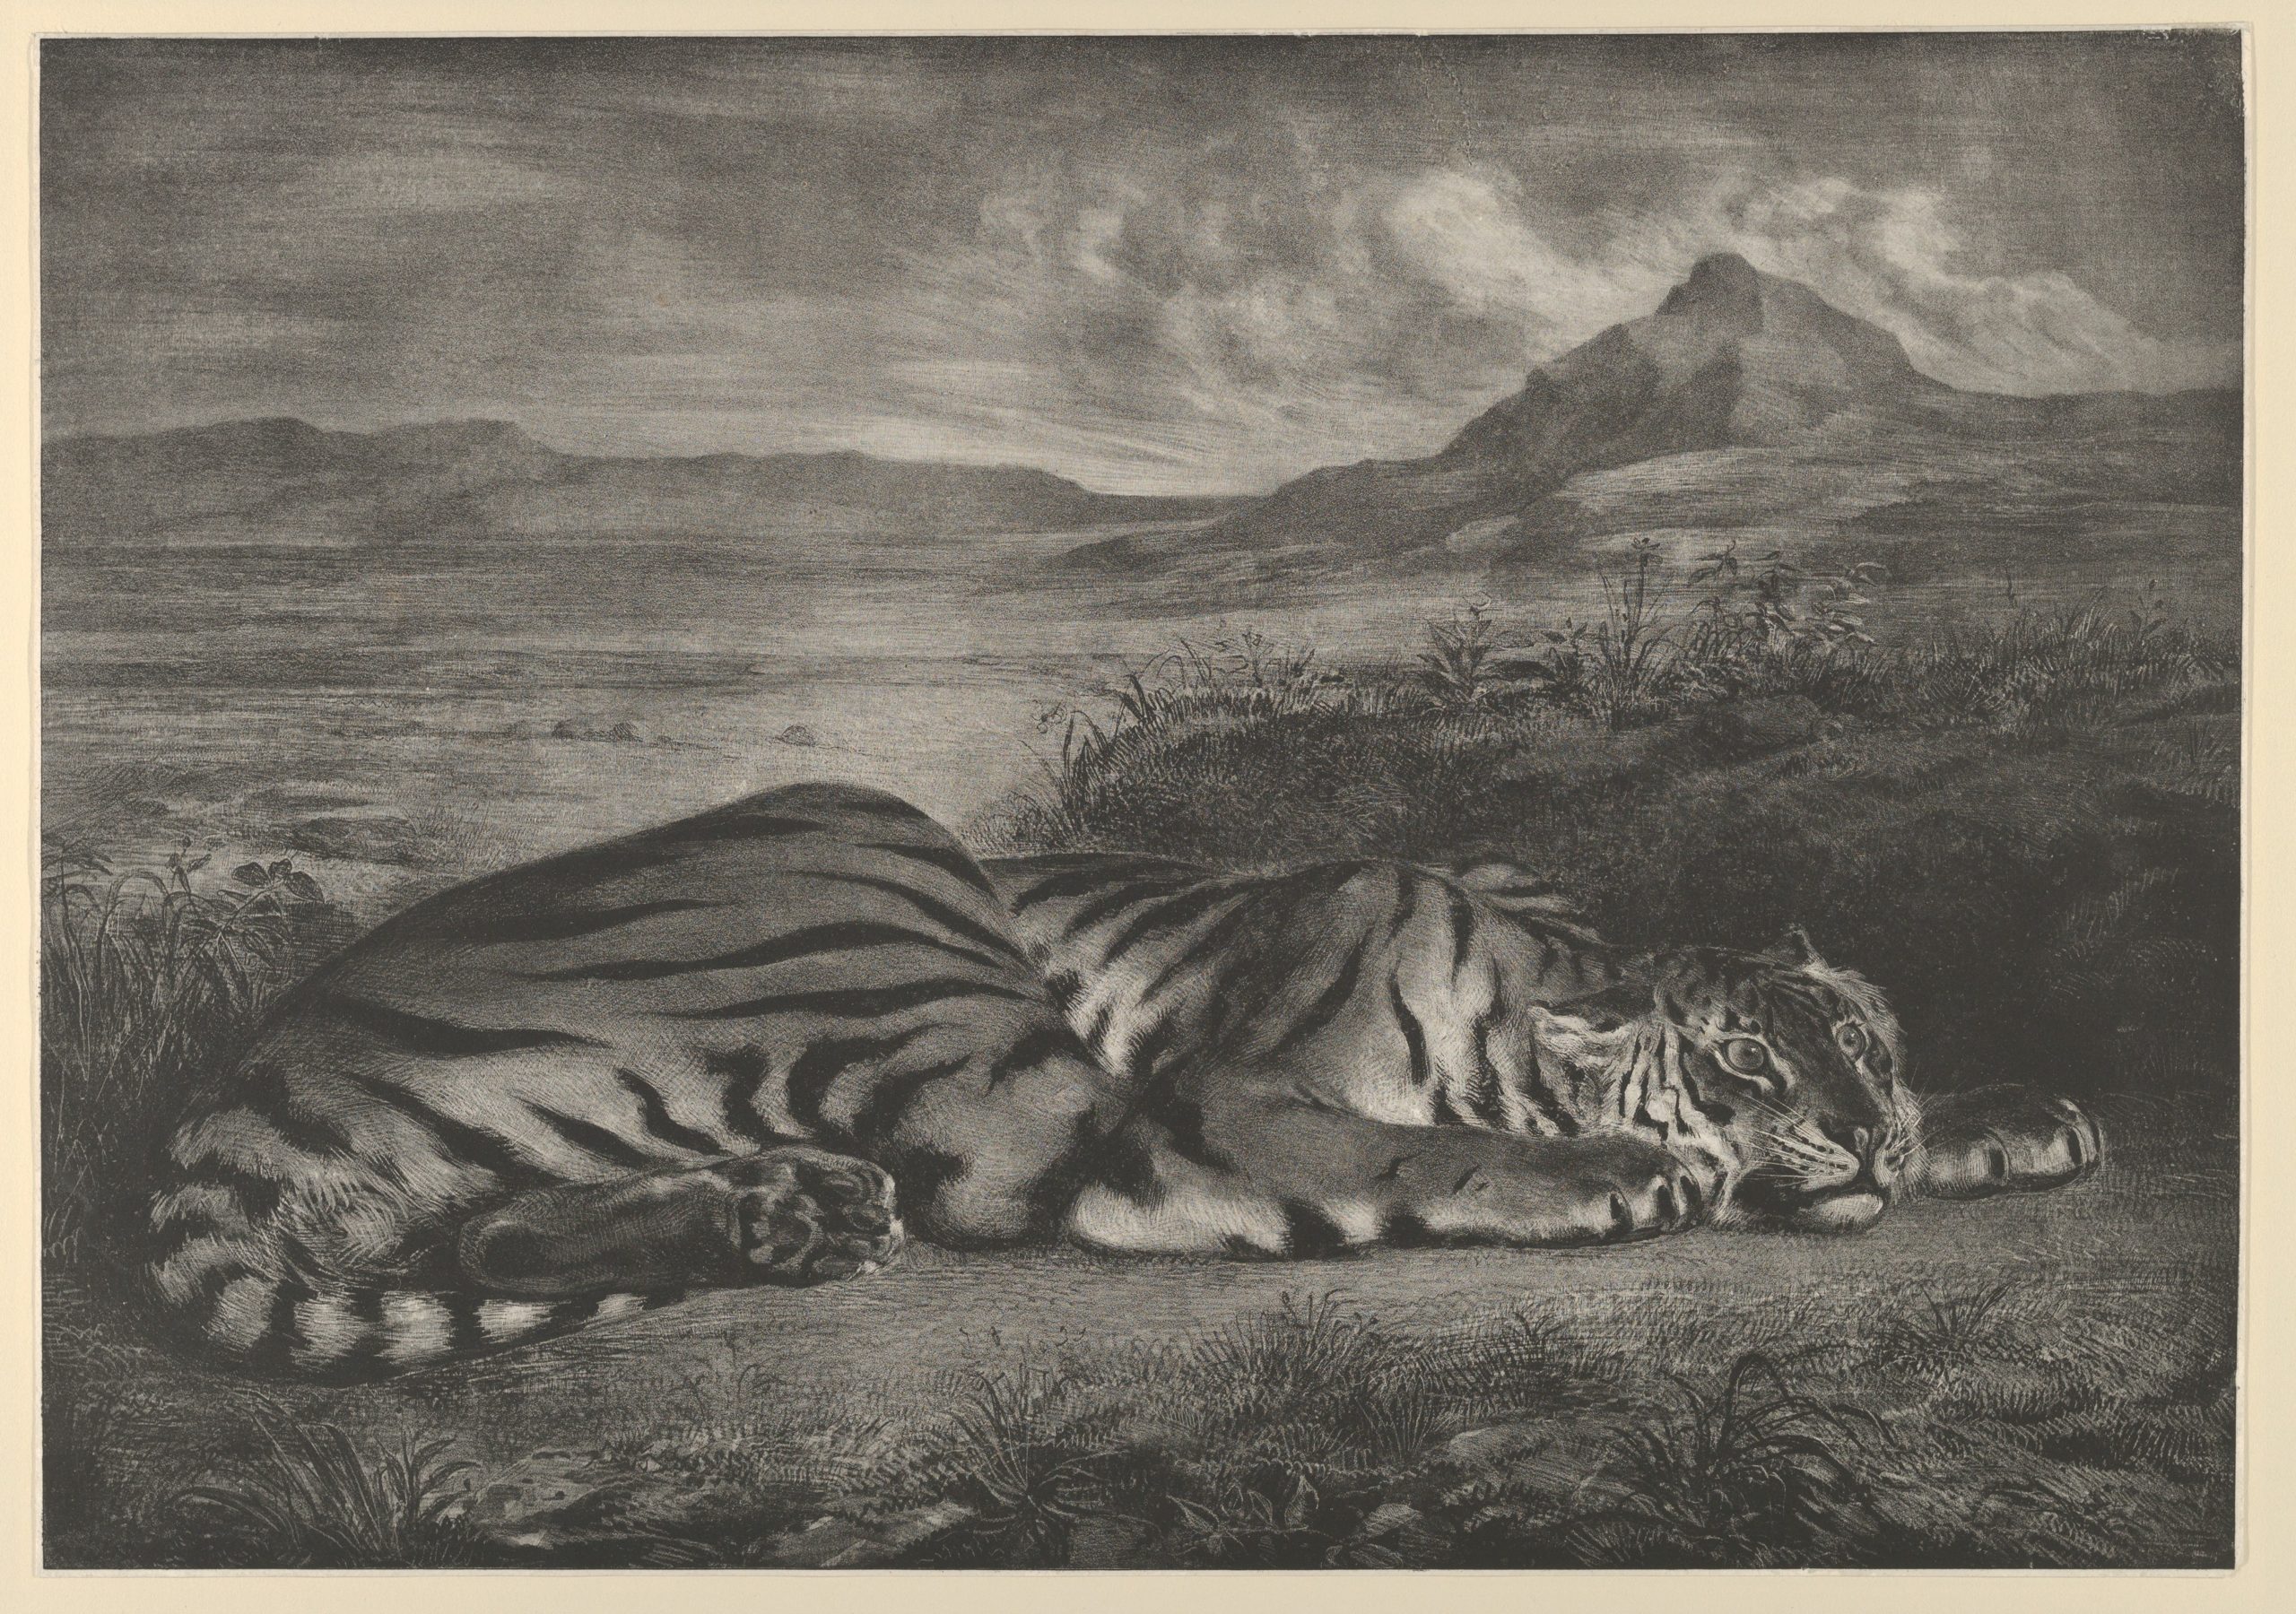 Eugène Delacroix, Royal Tiger, 1829, lithograph, 33.2 x 47.3 cm (The Metropolitan Museum of Art) 